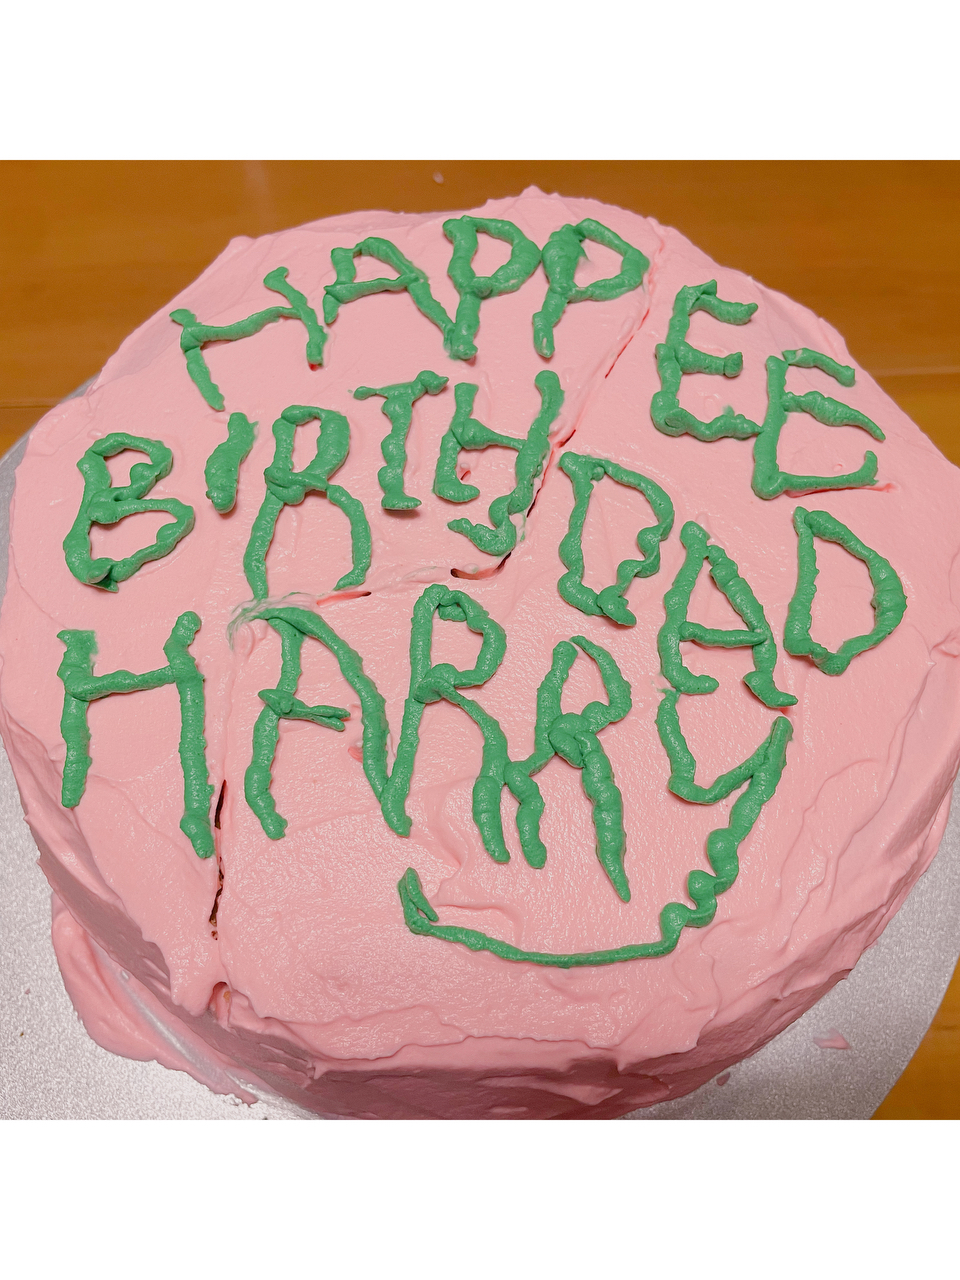 哈利波特复刻生日蛋糕